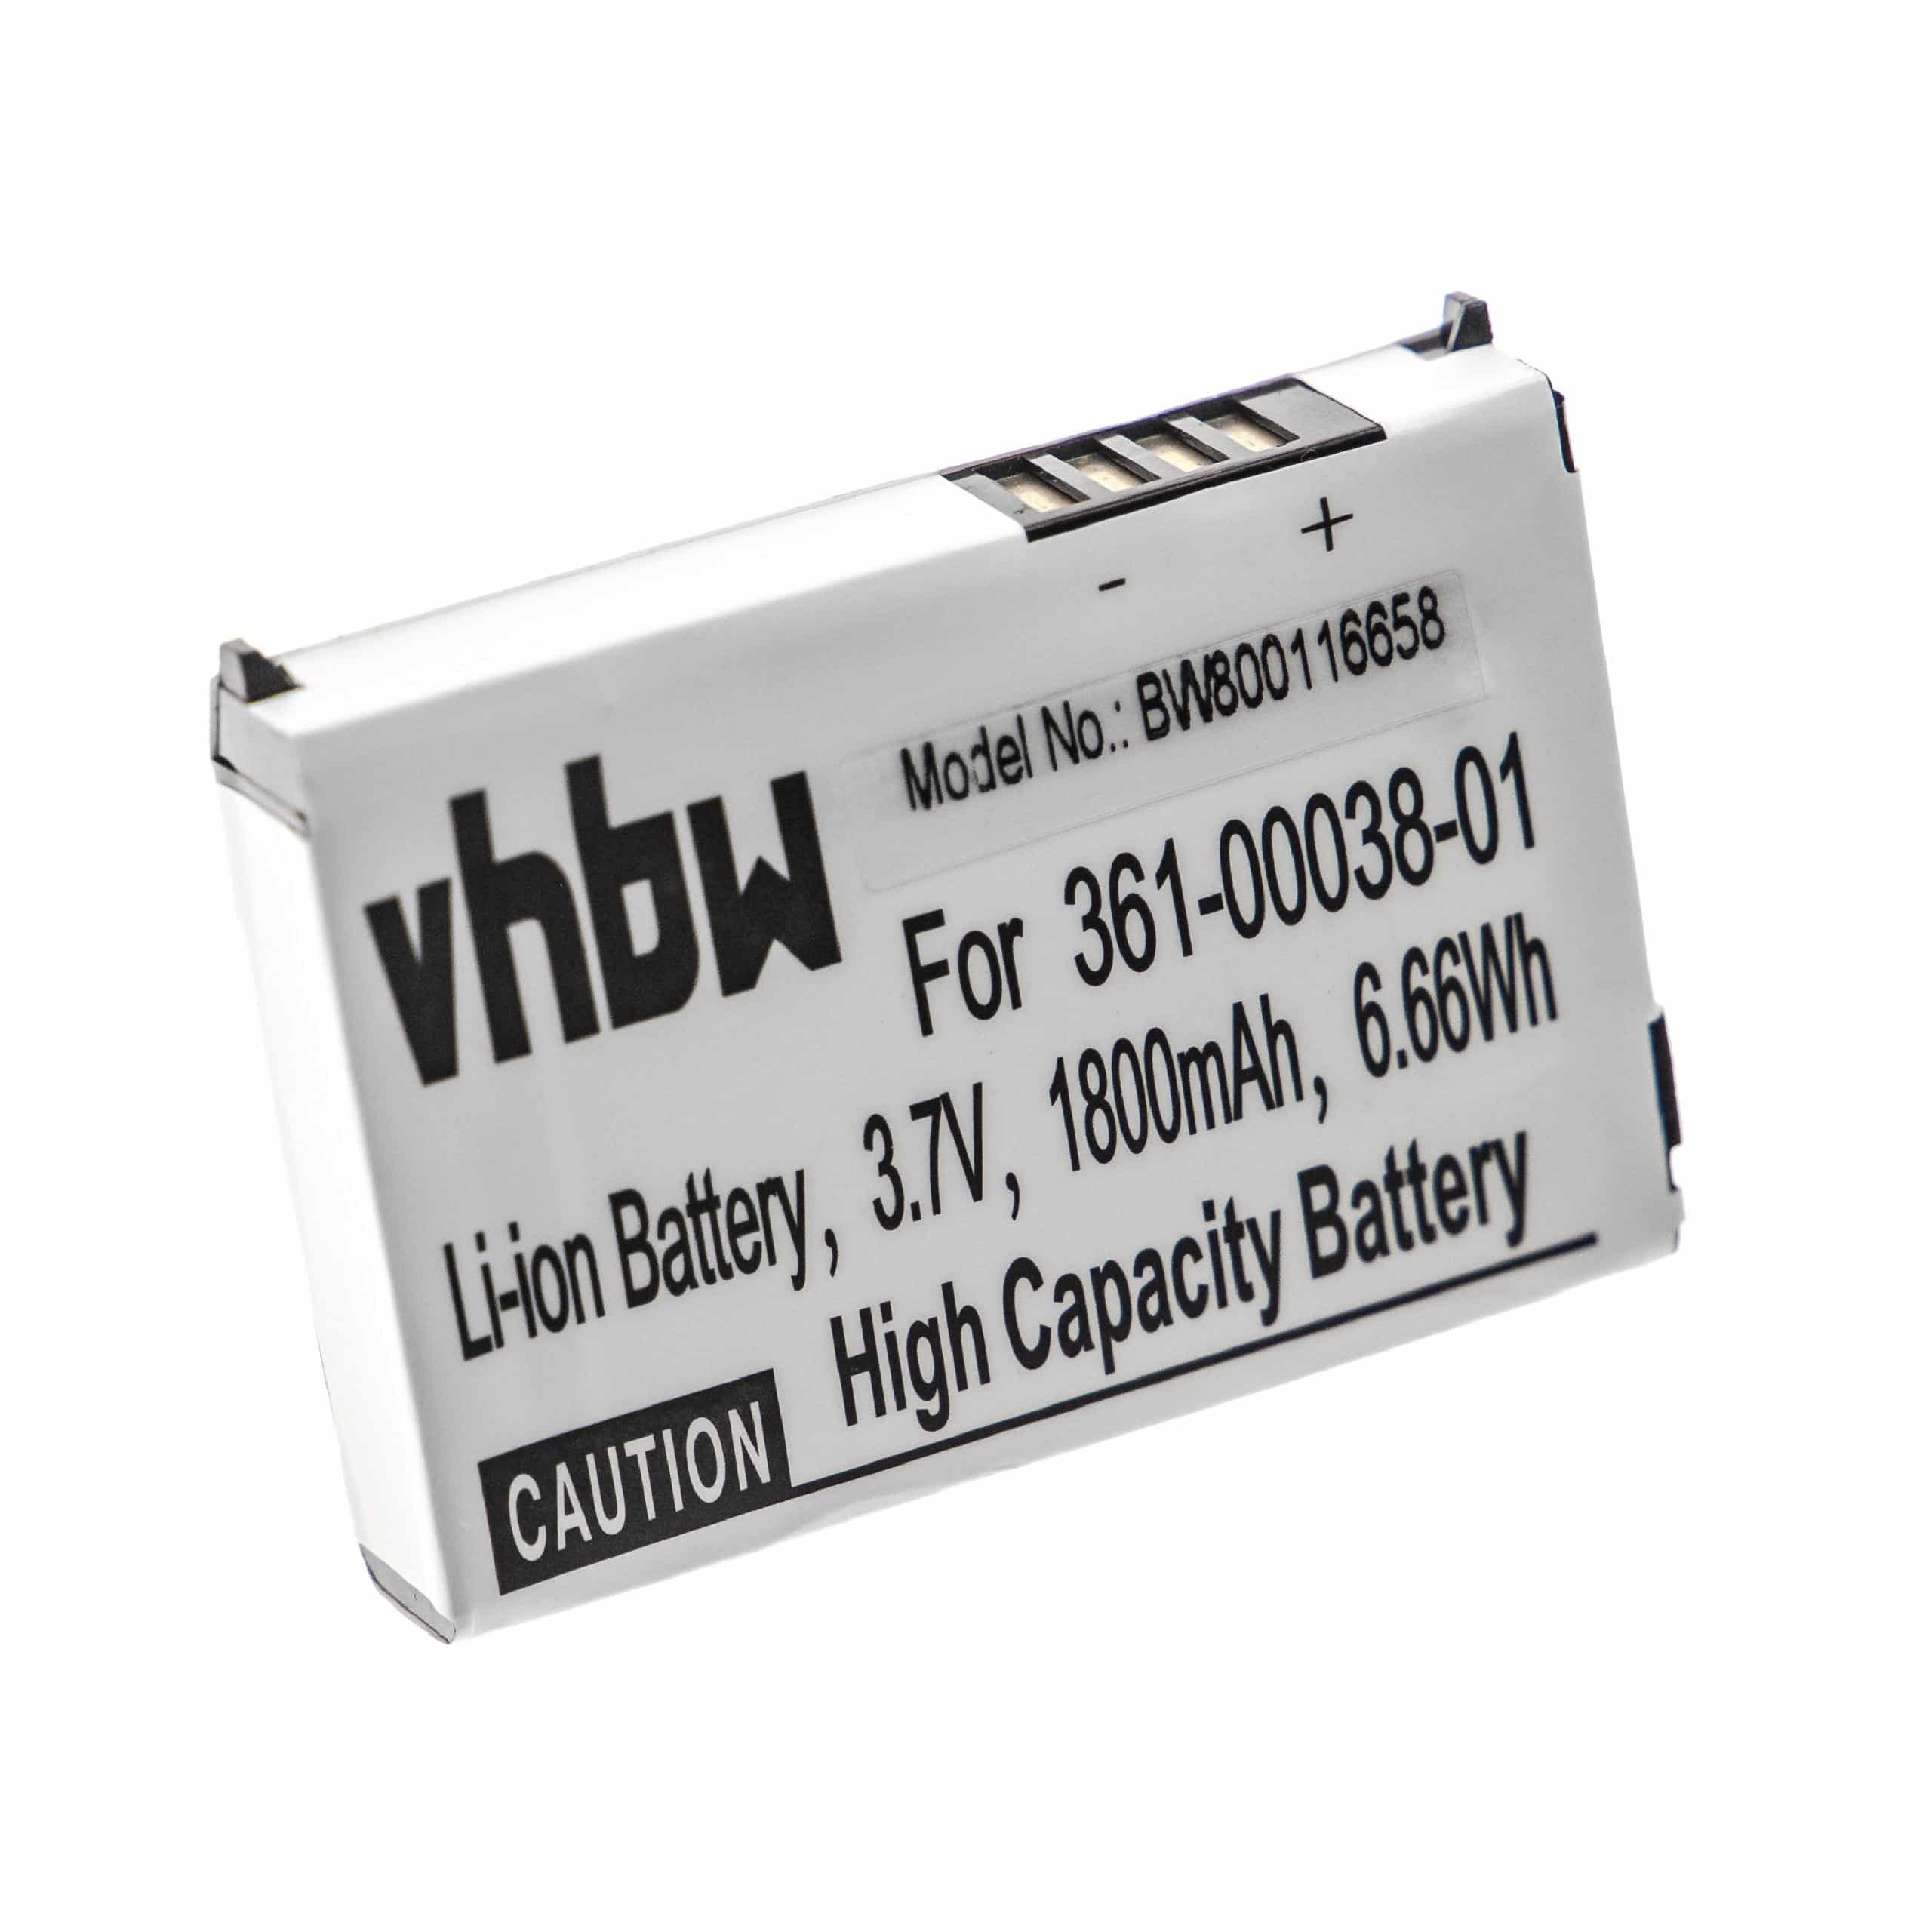 Batterie remplace Garmin 010-11143-00, 361-00038-01 pour navigation GPS - 1880mAh 3,7V Li-ion